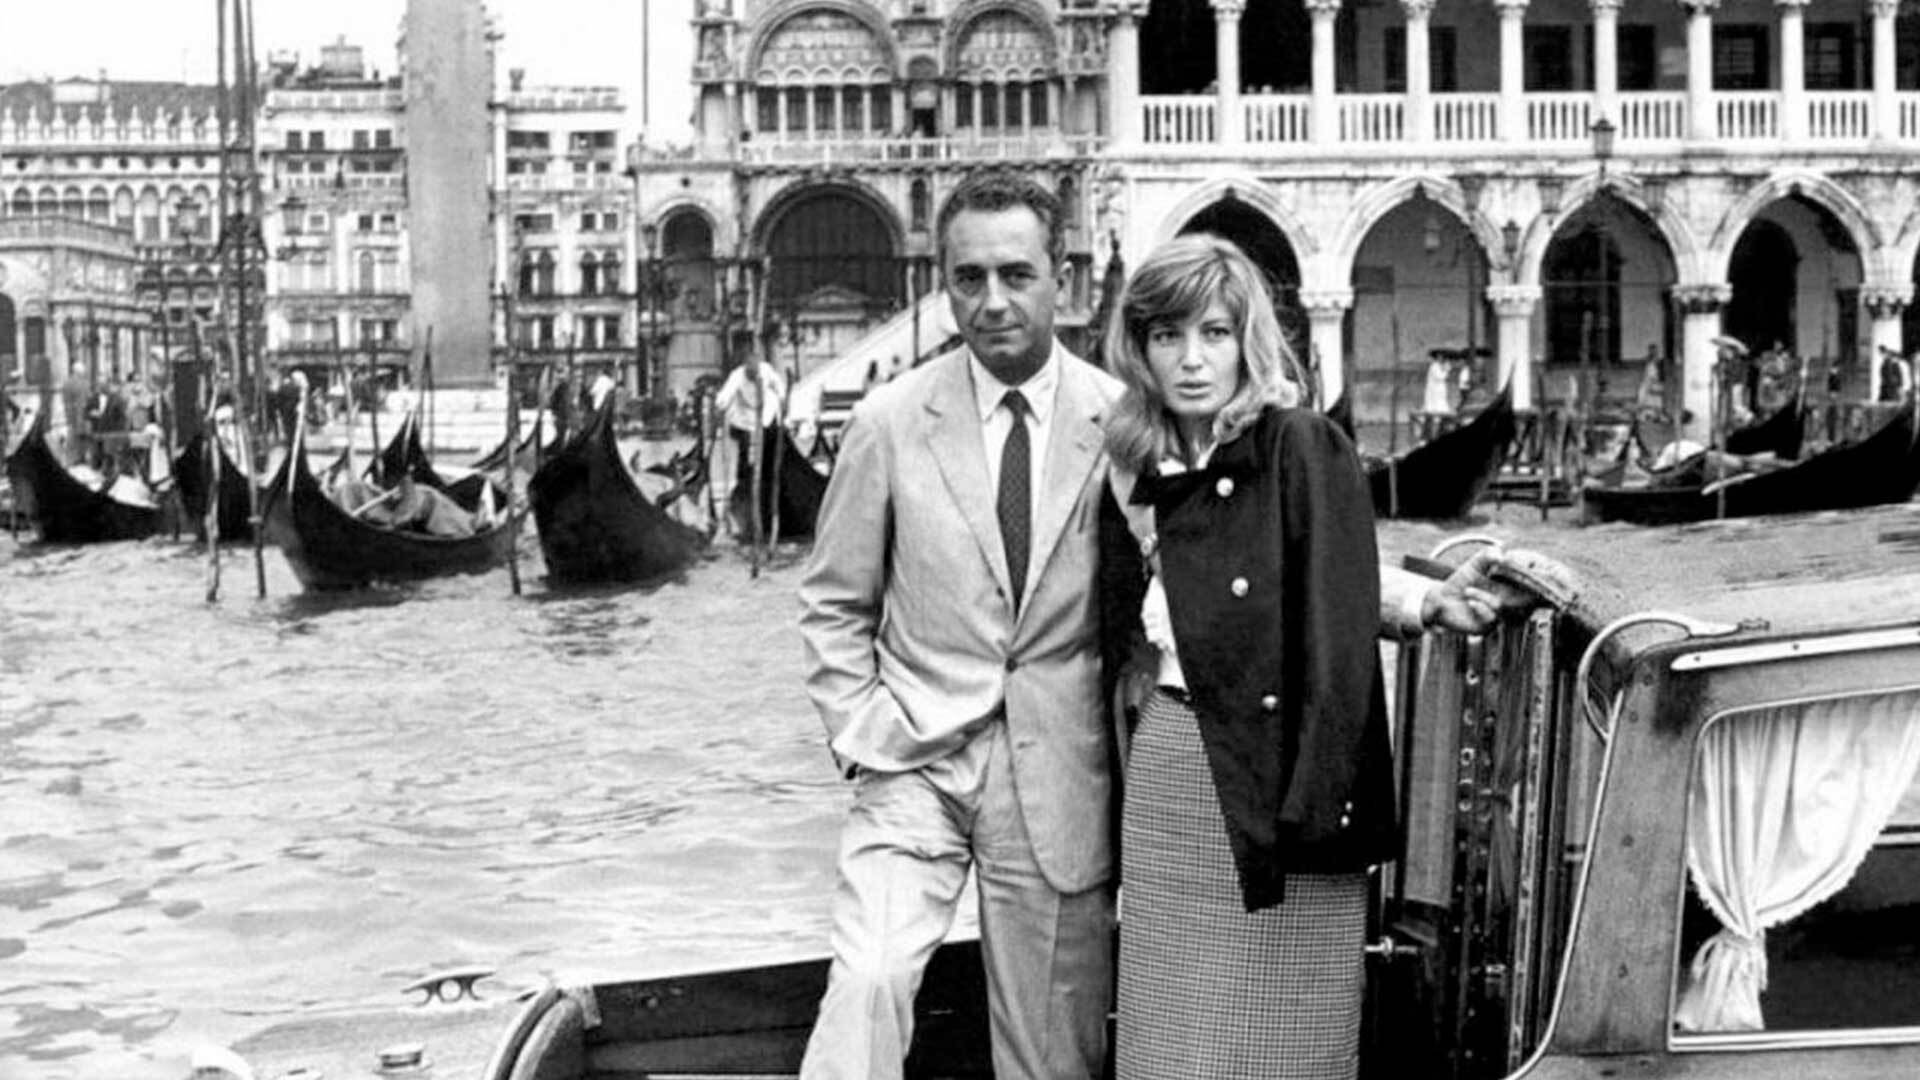 Monica Vitti and Michelangelo Antonioni at Venice Film Festival, 1962 (Credit: Archivio Cameraphoto)